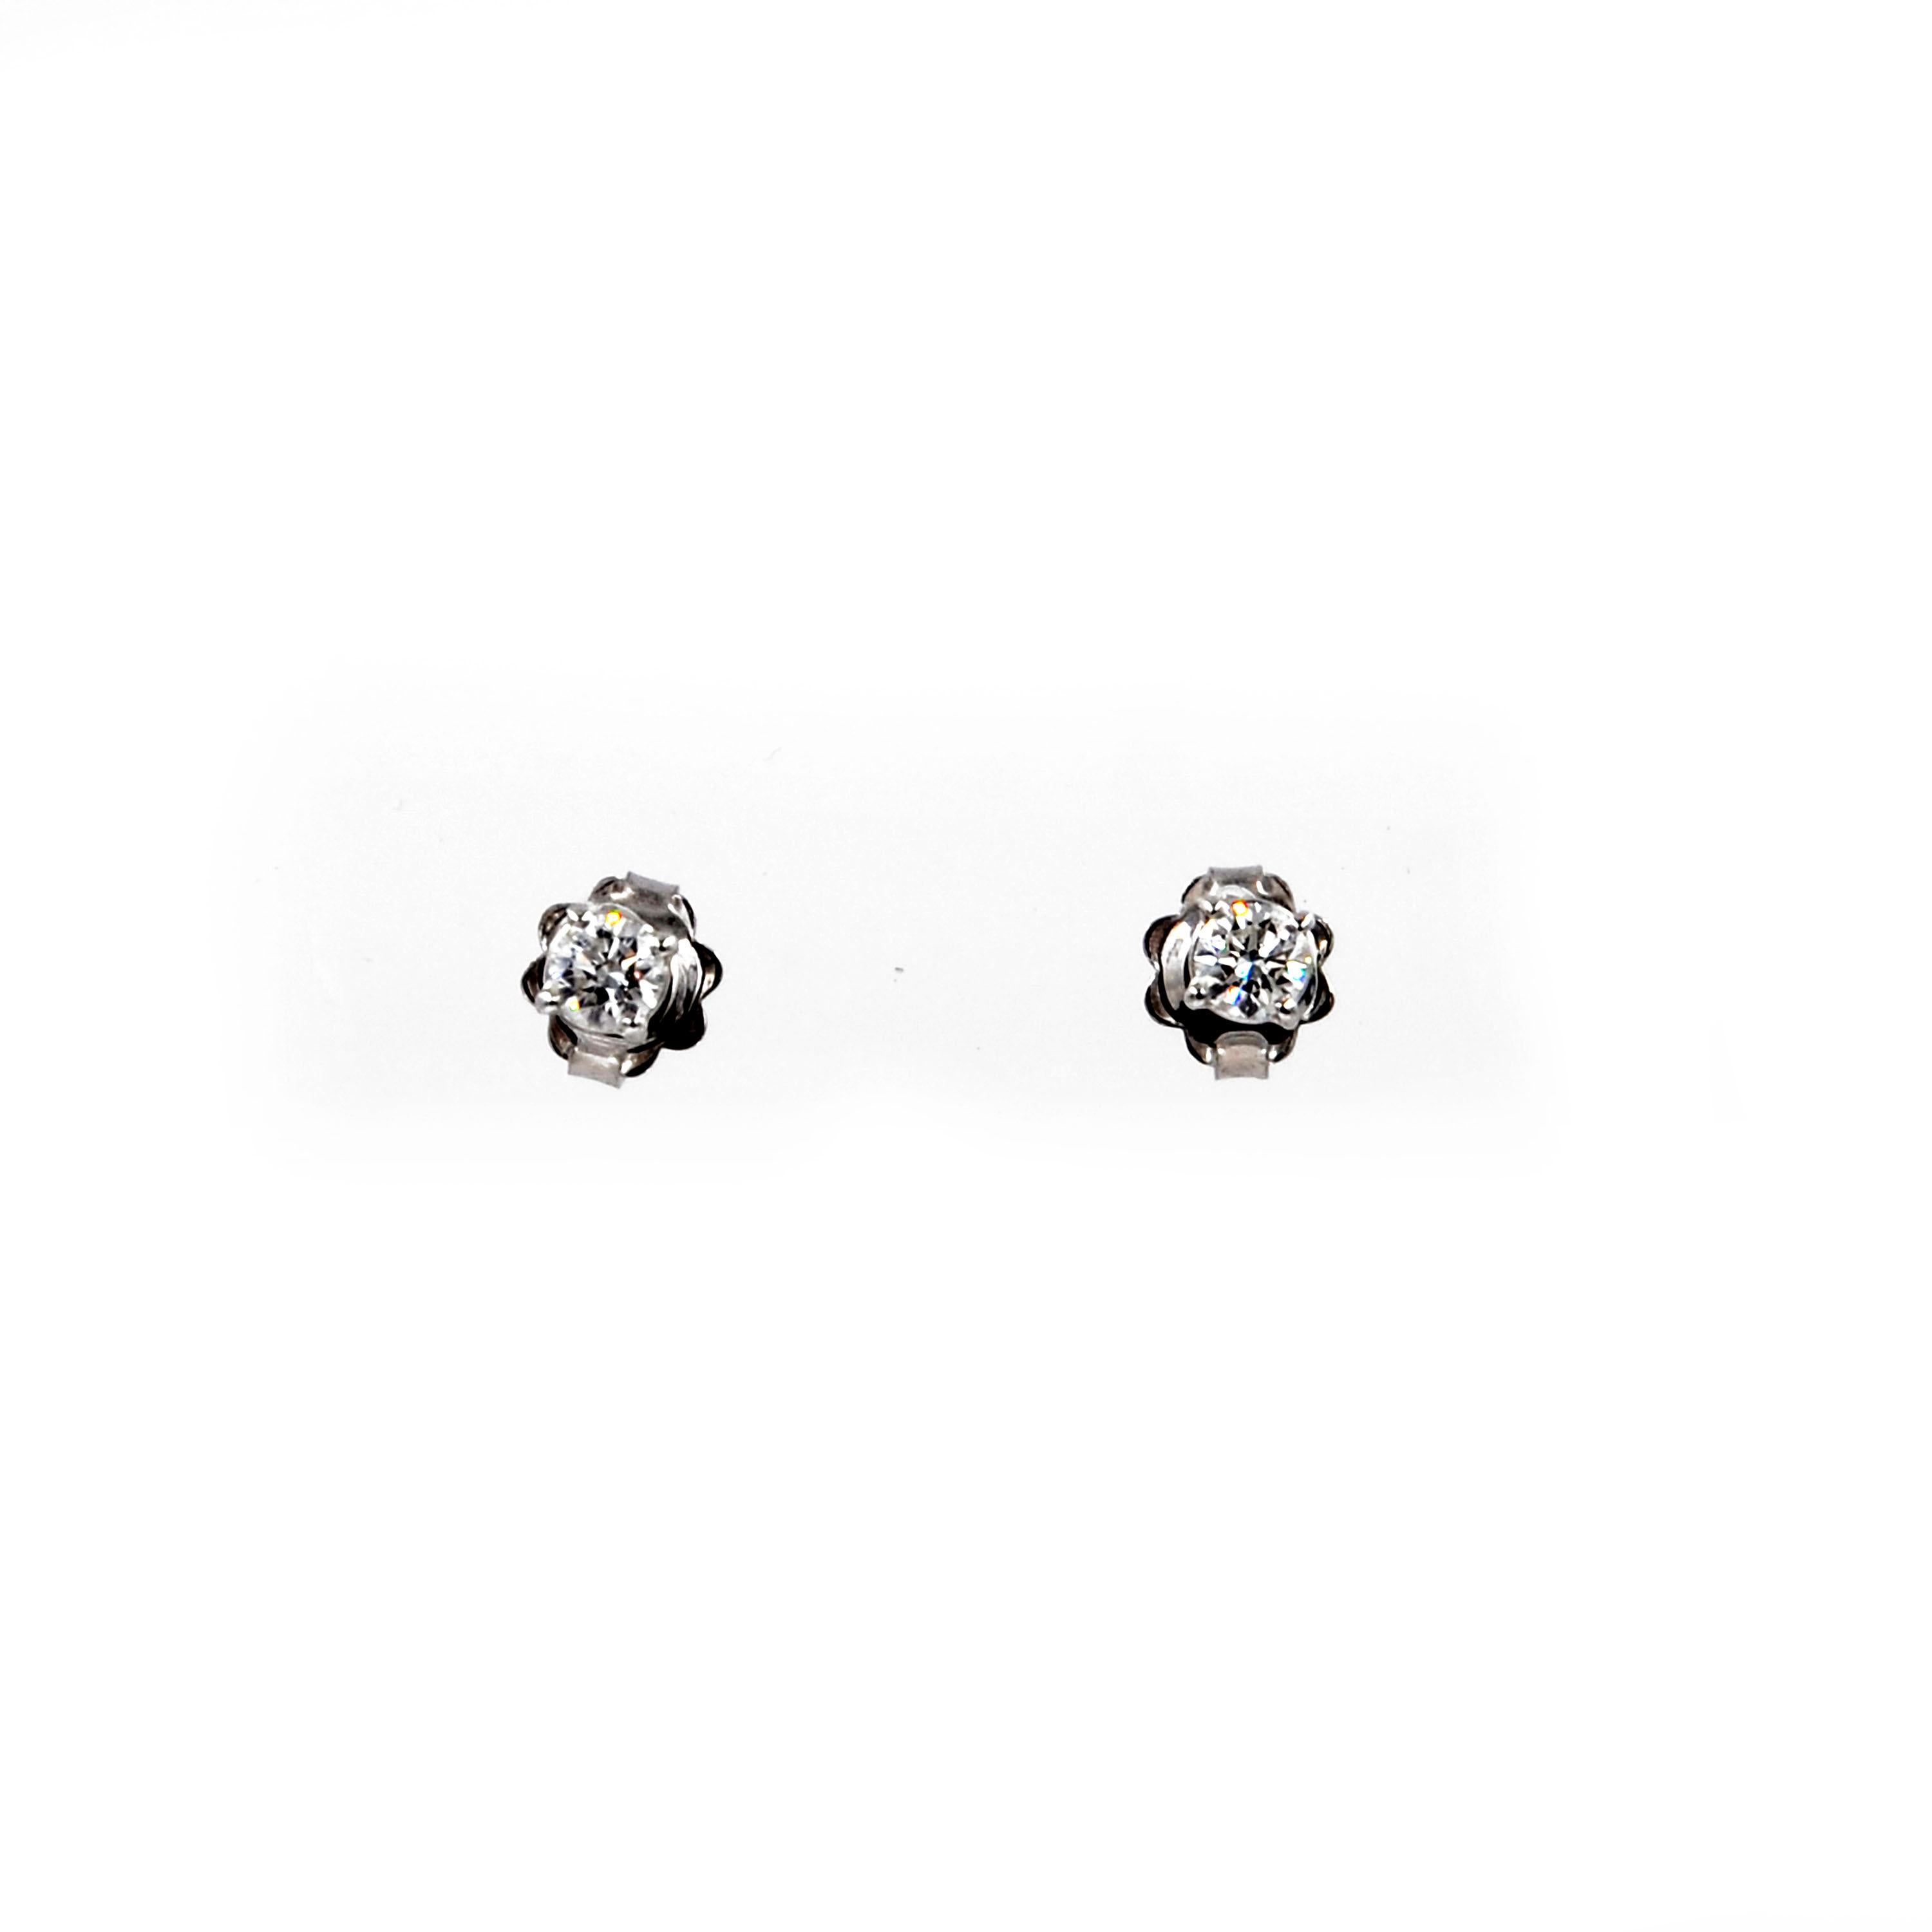 Garavelli 18 Karat White Gold Diamonds Stud Earrings 1